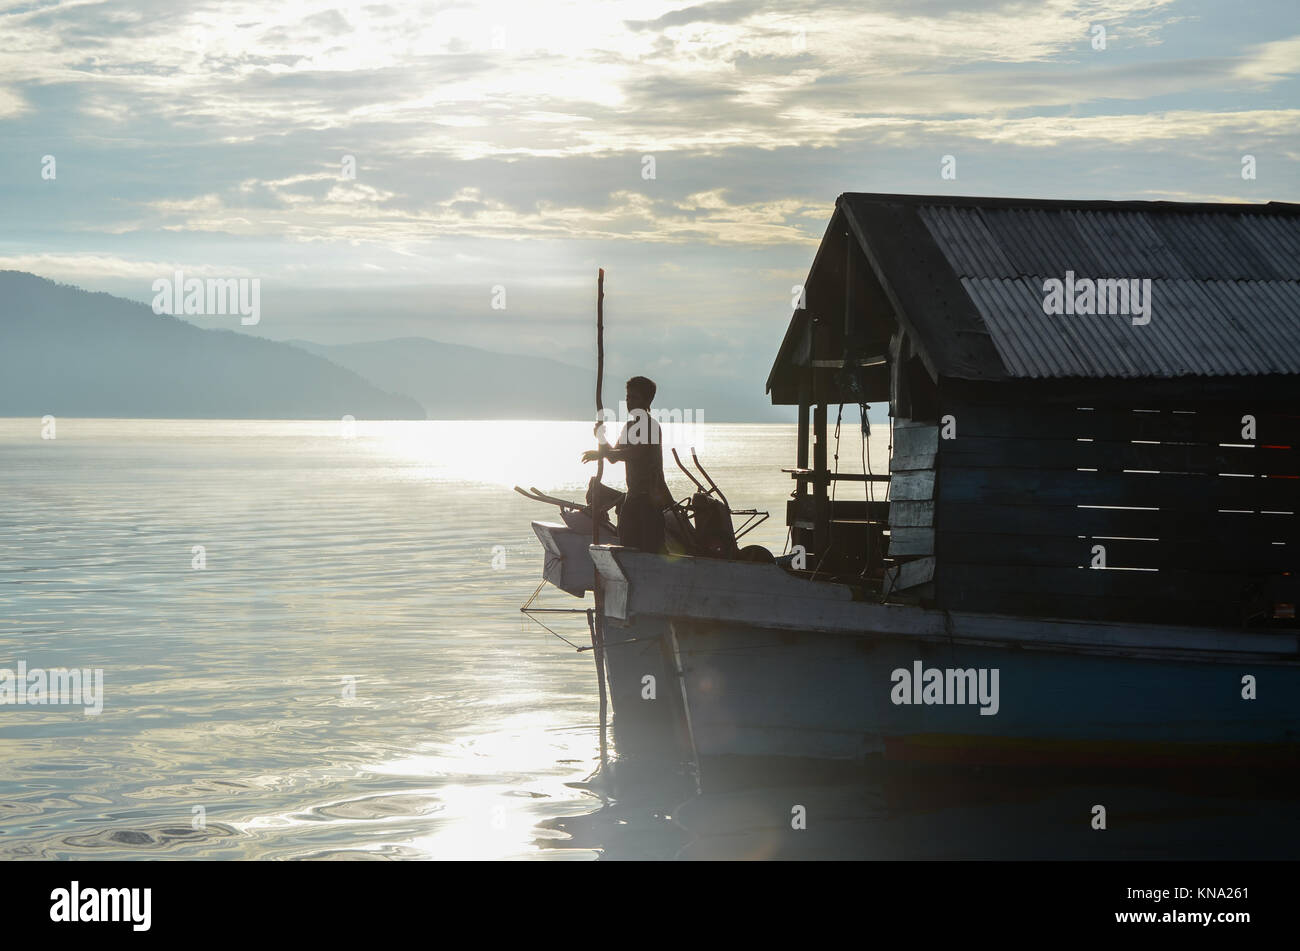 Traditionelle Boot Fahrer vorbereiten für Docking in Timampu Hafen im Süden von Sulawesi, Indonesien. Stockfoto